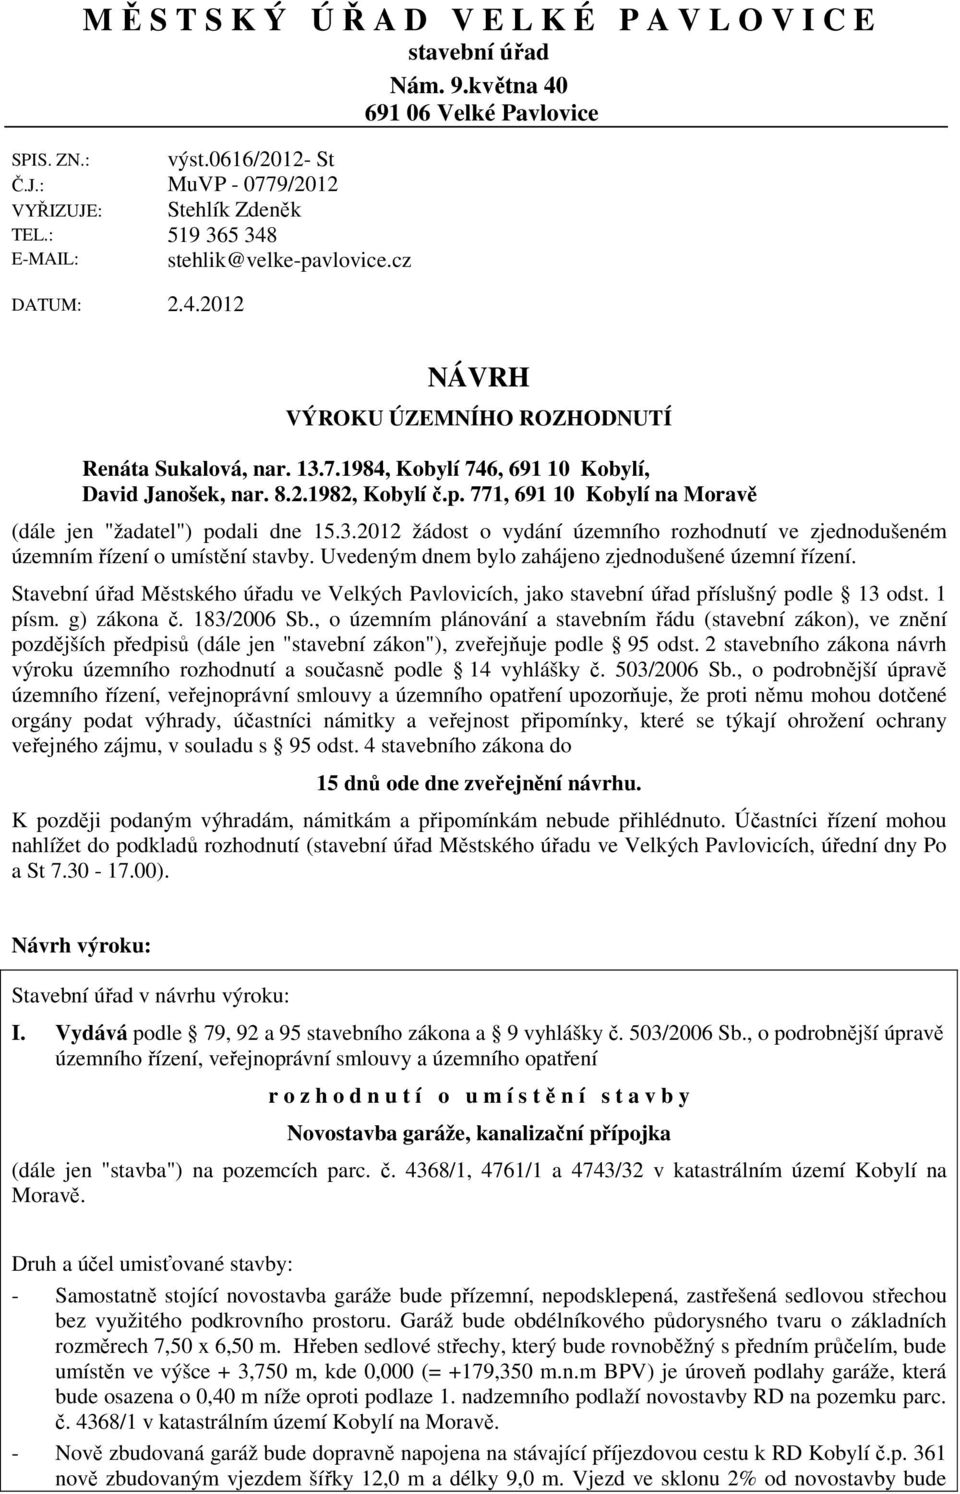 771, 691 10 Kobylí na Moravě (dále jen "žadatel") podali dne 15.3.2012 žádost o vydání územního rozhodnutí ve zjednodušeném územním řízení o umístění stavby.